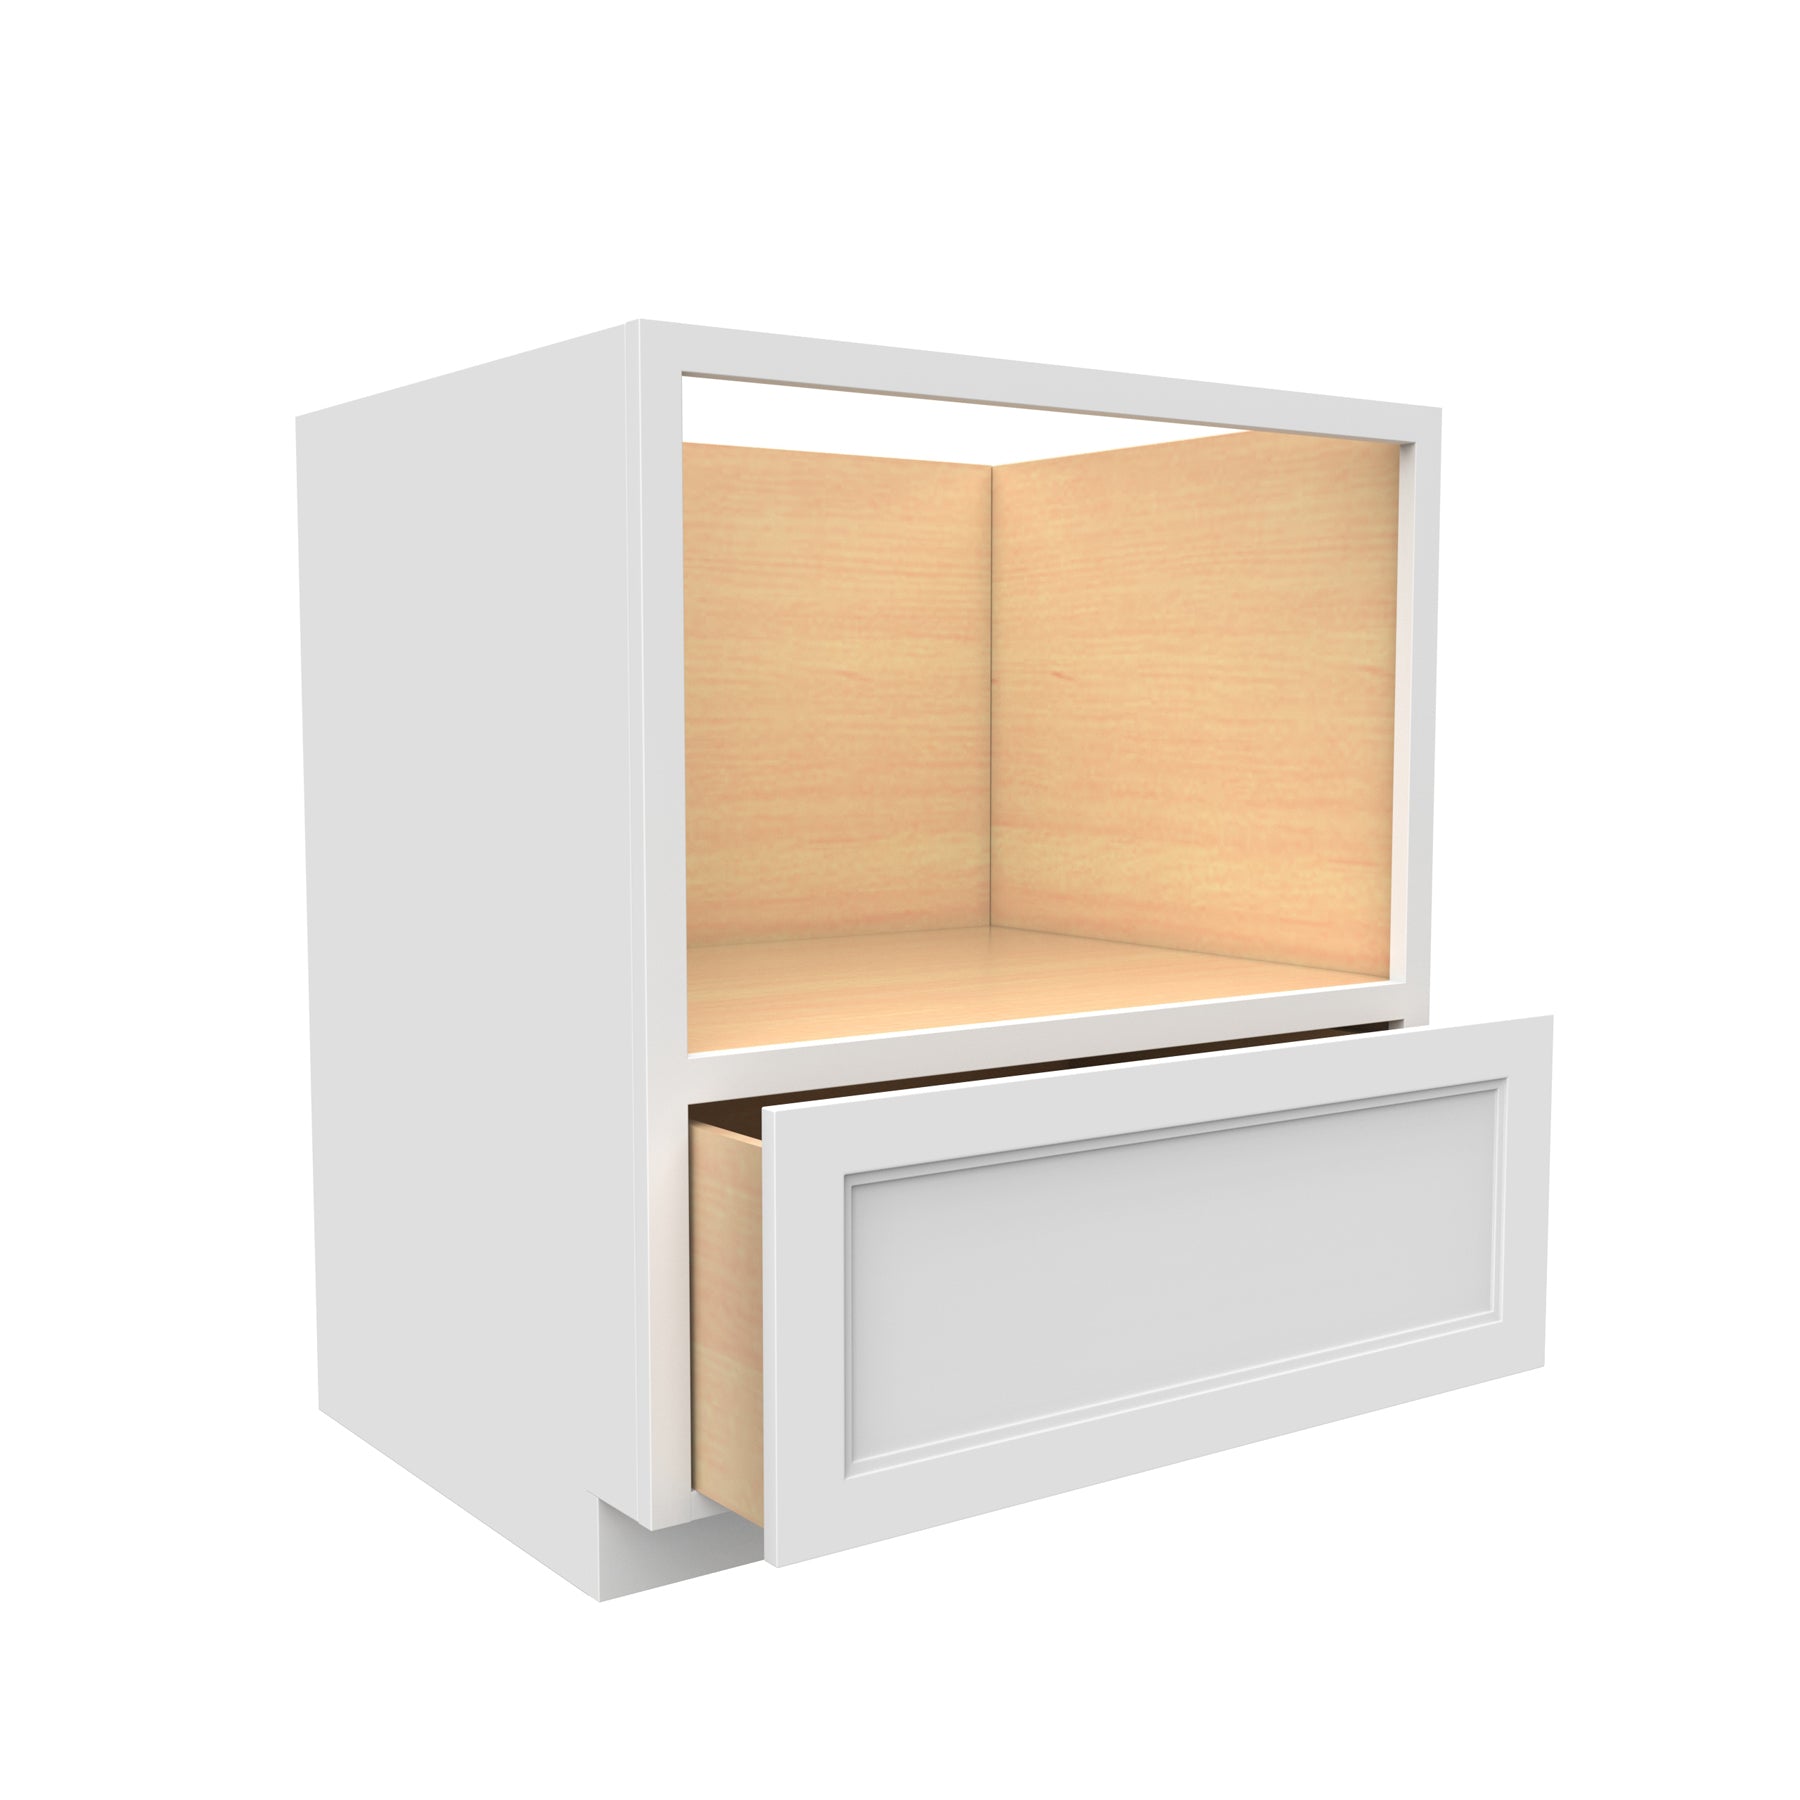 Fashion White - Microwave Base Cabinet | 30"W x 34.5"H x 24"D